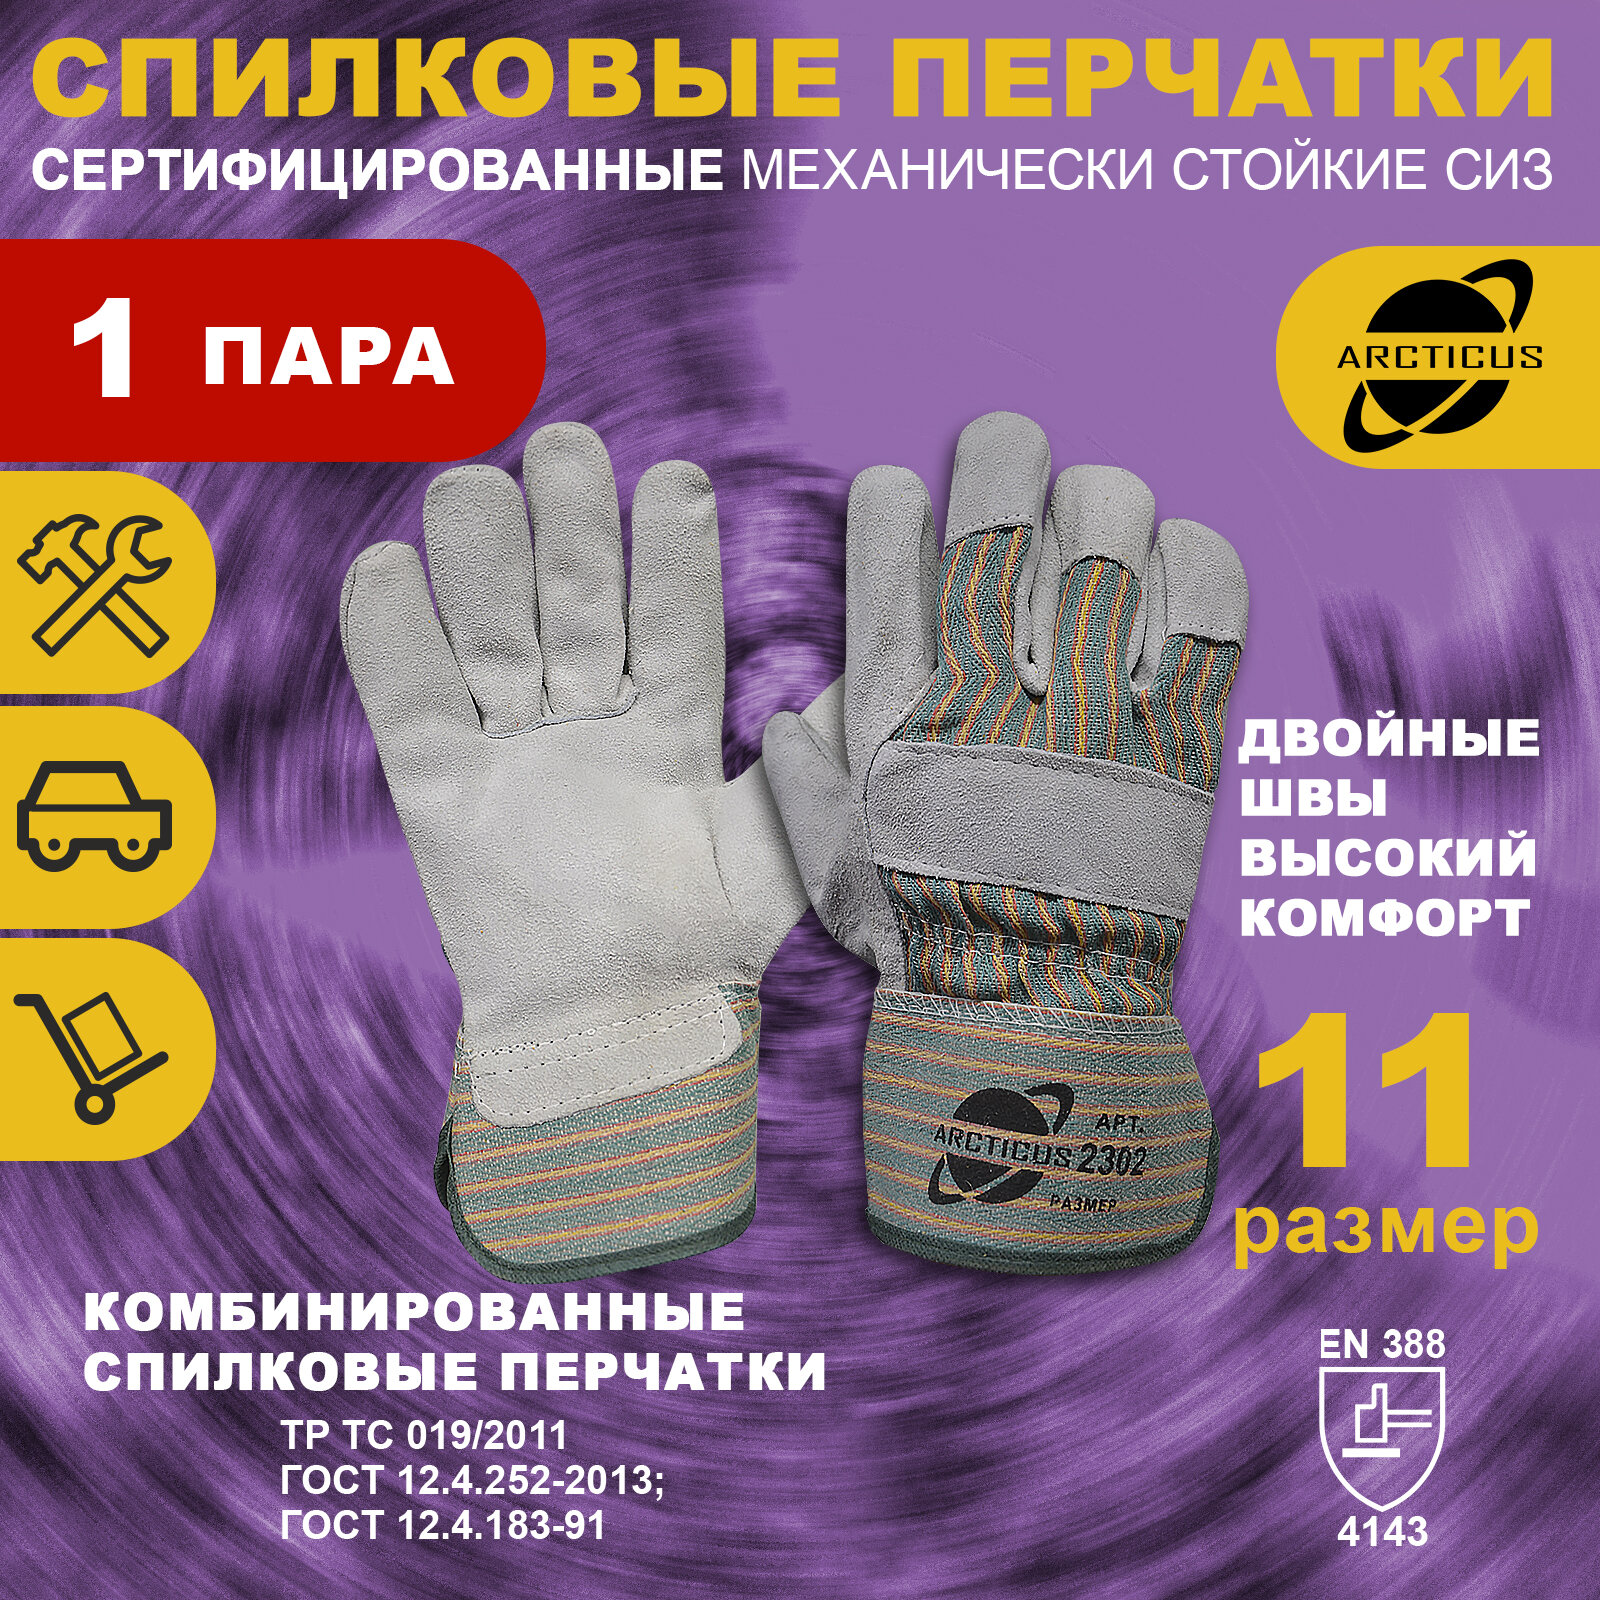 Спилковые перчатки ARCTICUS арт. 2302 размер 11